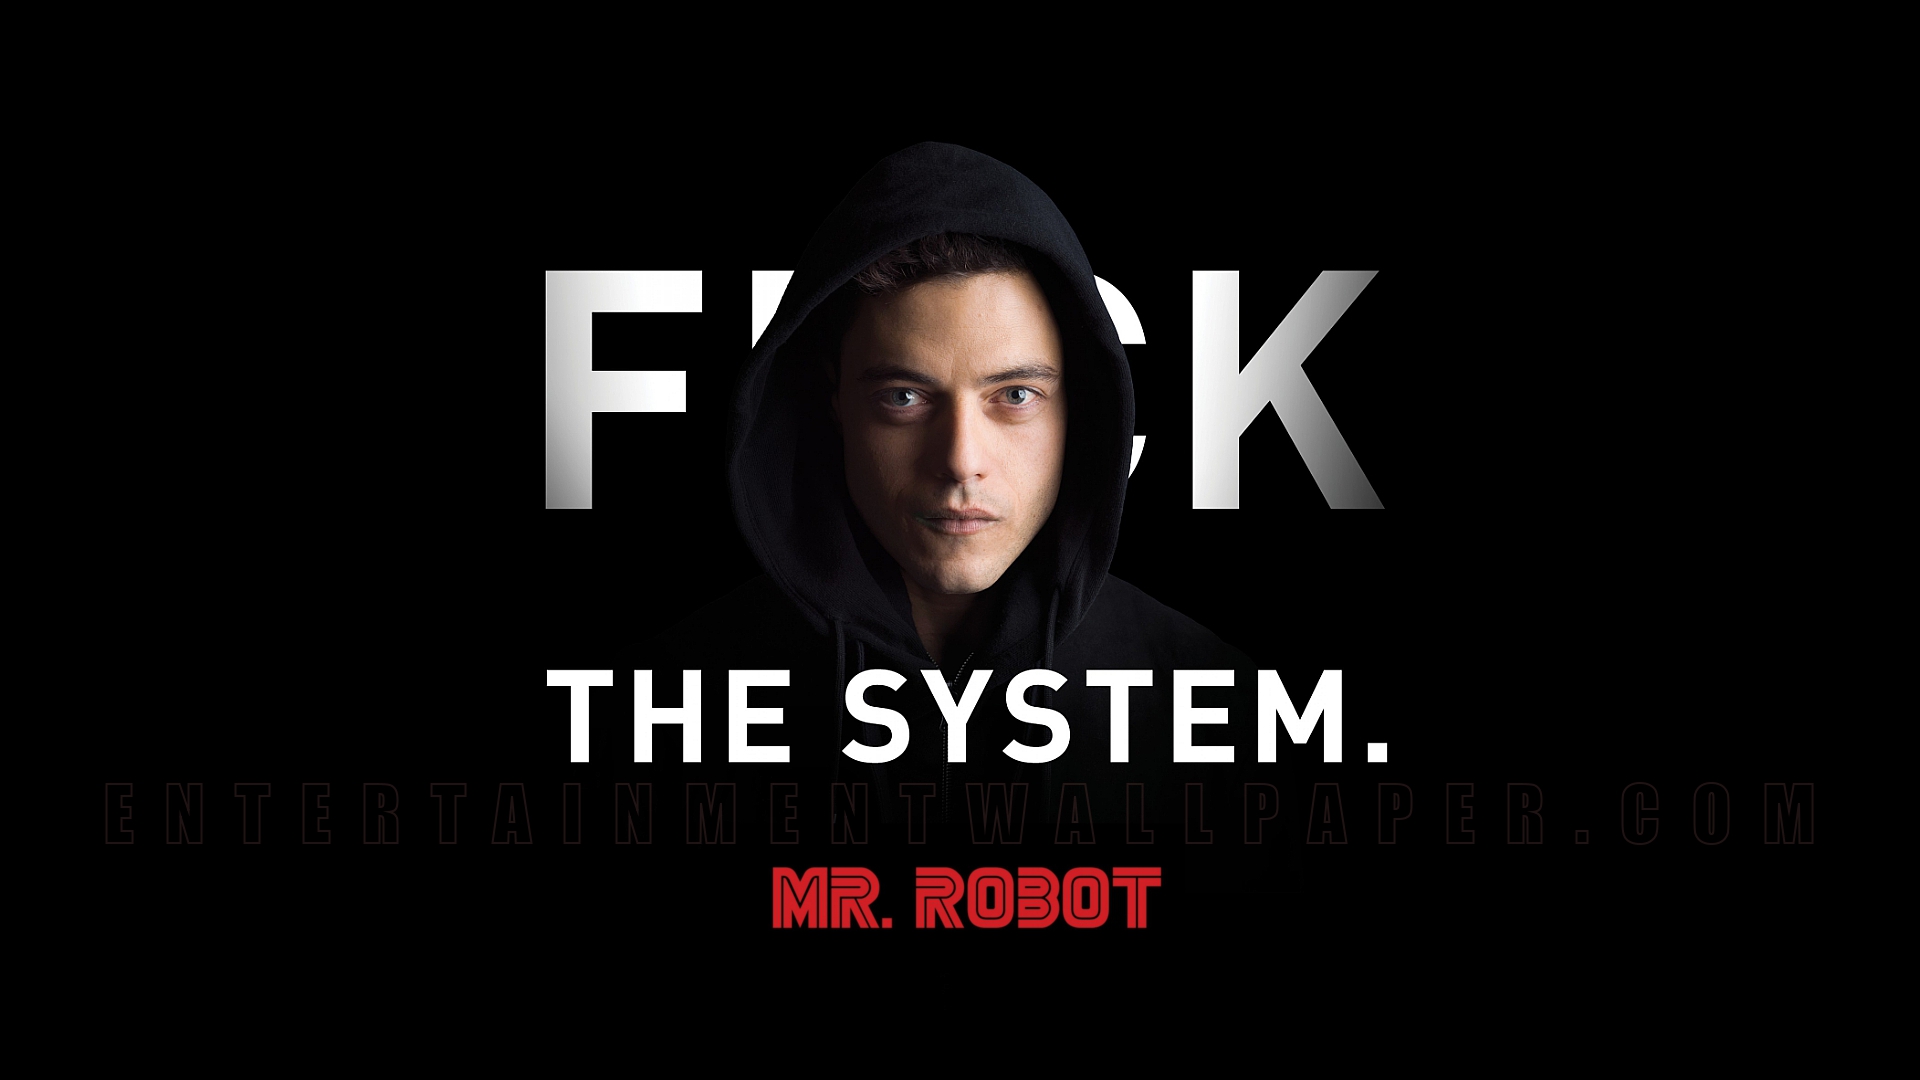 Mr. Robot' quase foi uma série original da Netflix, revela executivo -  Olhar Digital